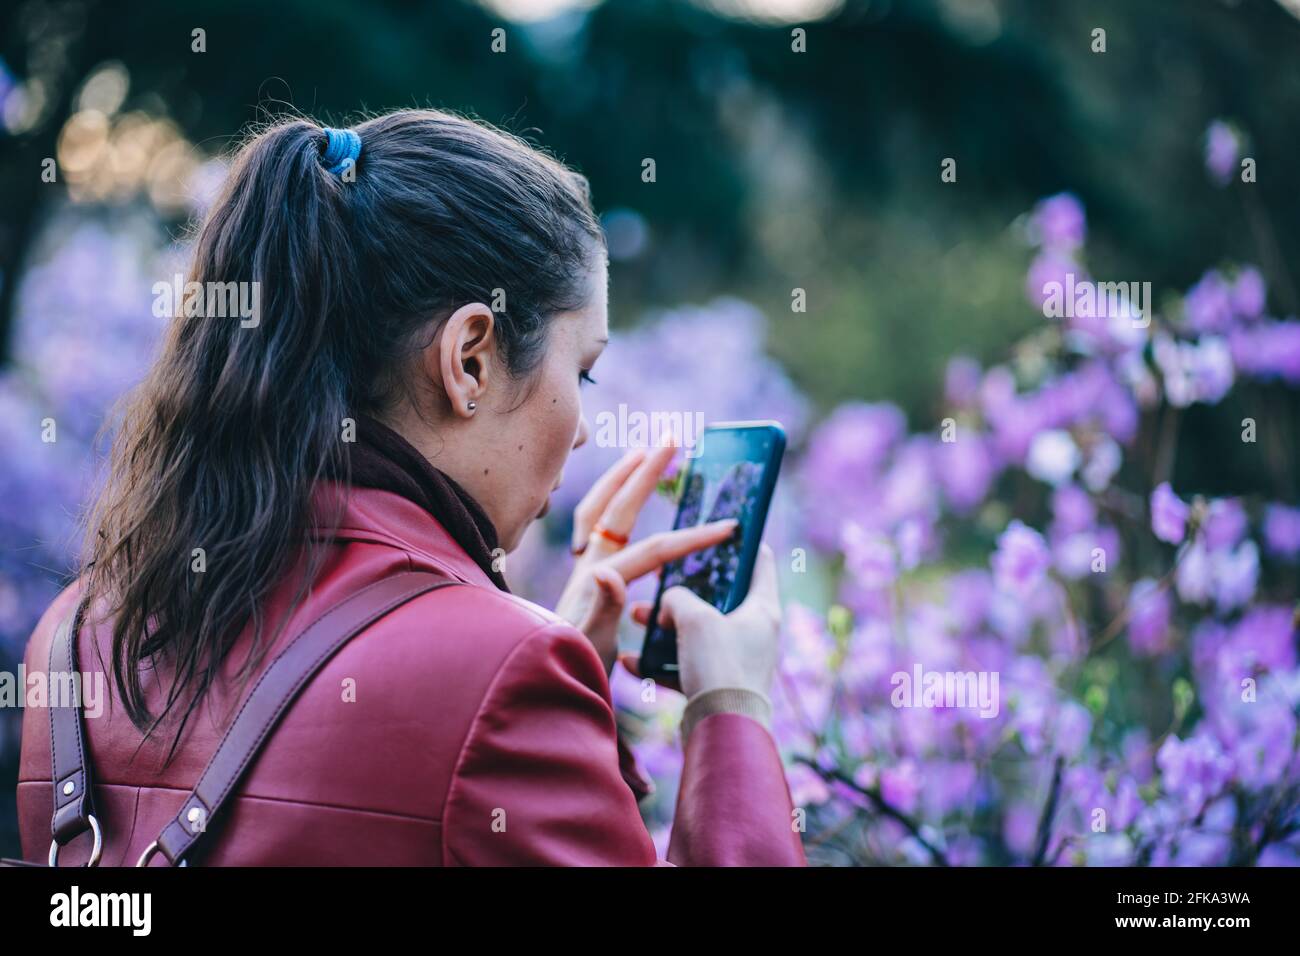 Mädchen fotografiert am Telefon eines blühenden Busches Im Park Stockfoto